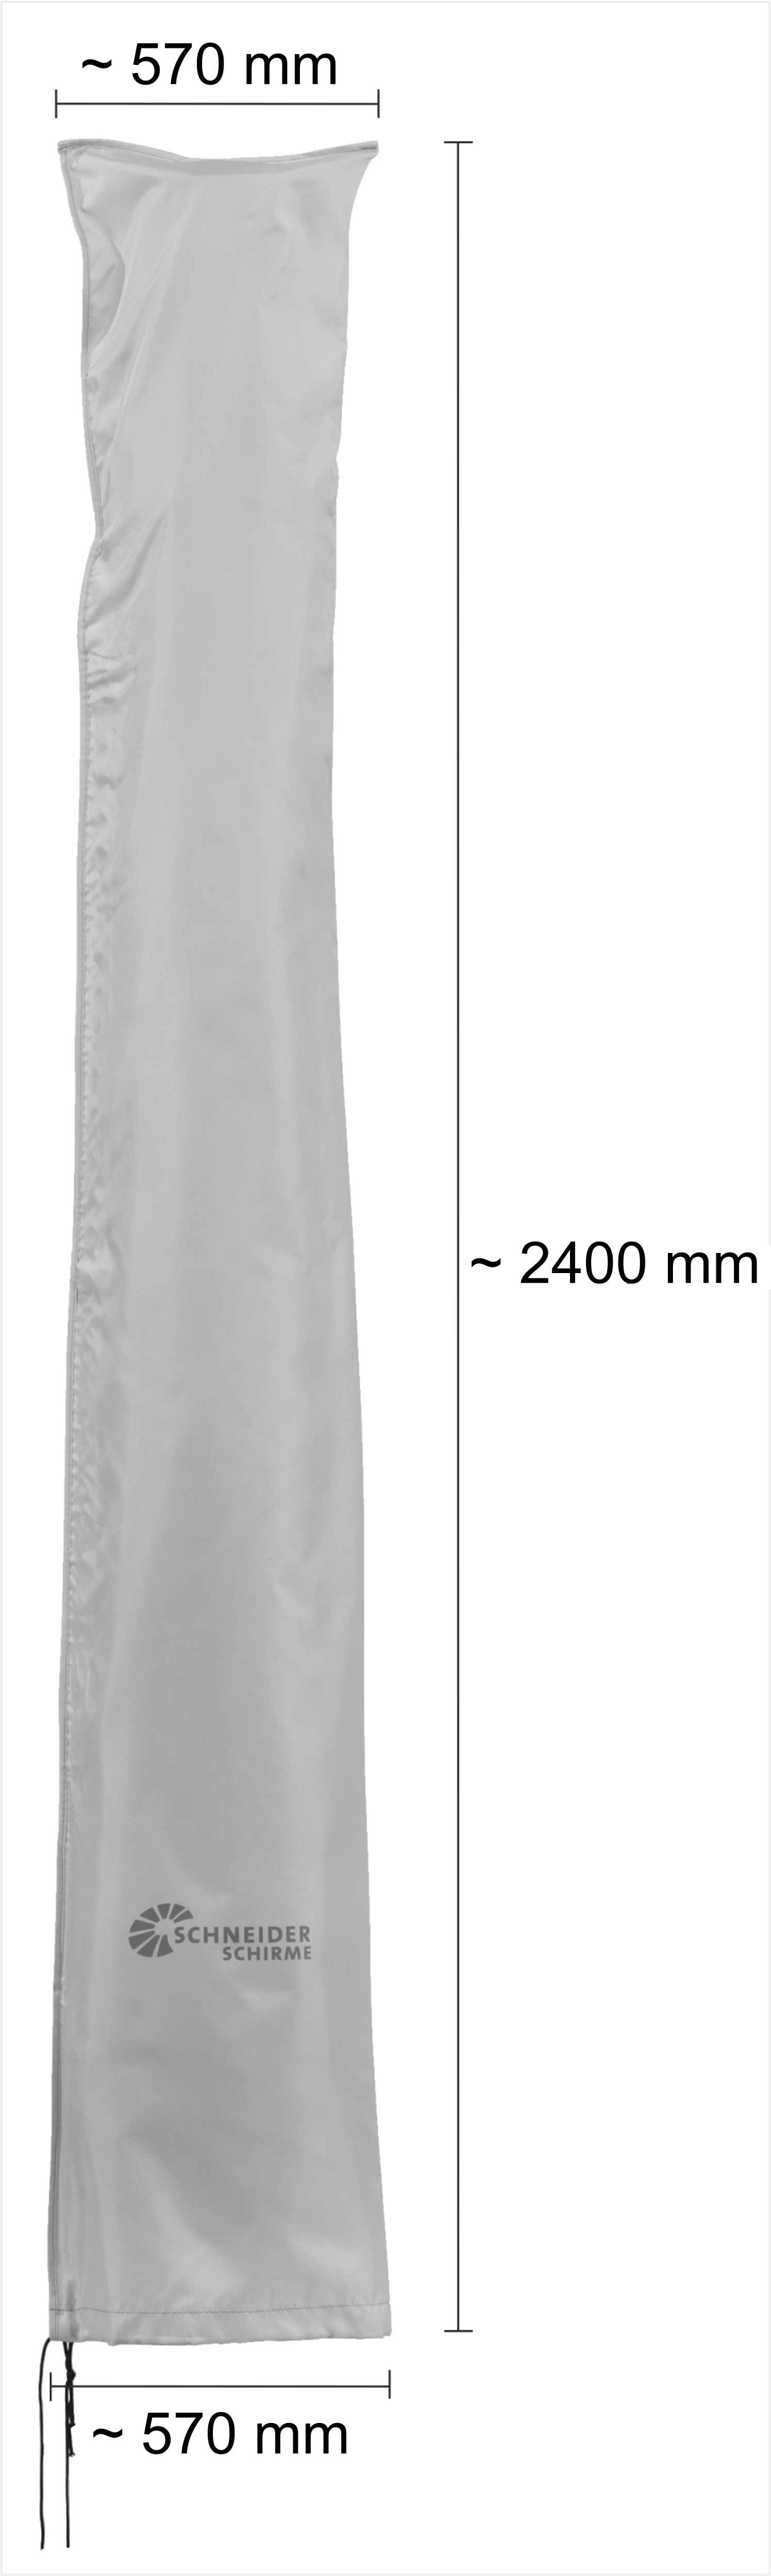 Schneider Schutzhülle für Ampelschirme 4 Meter